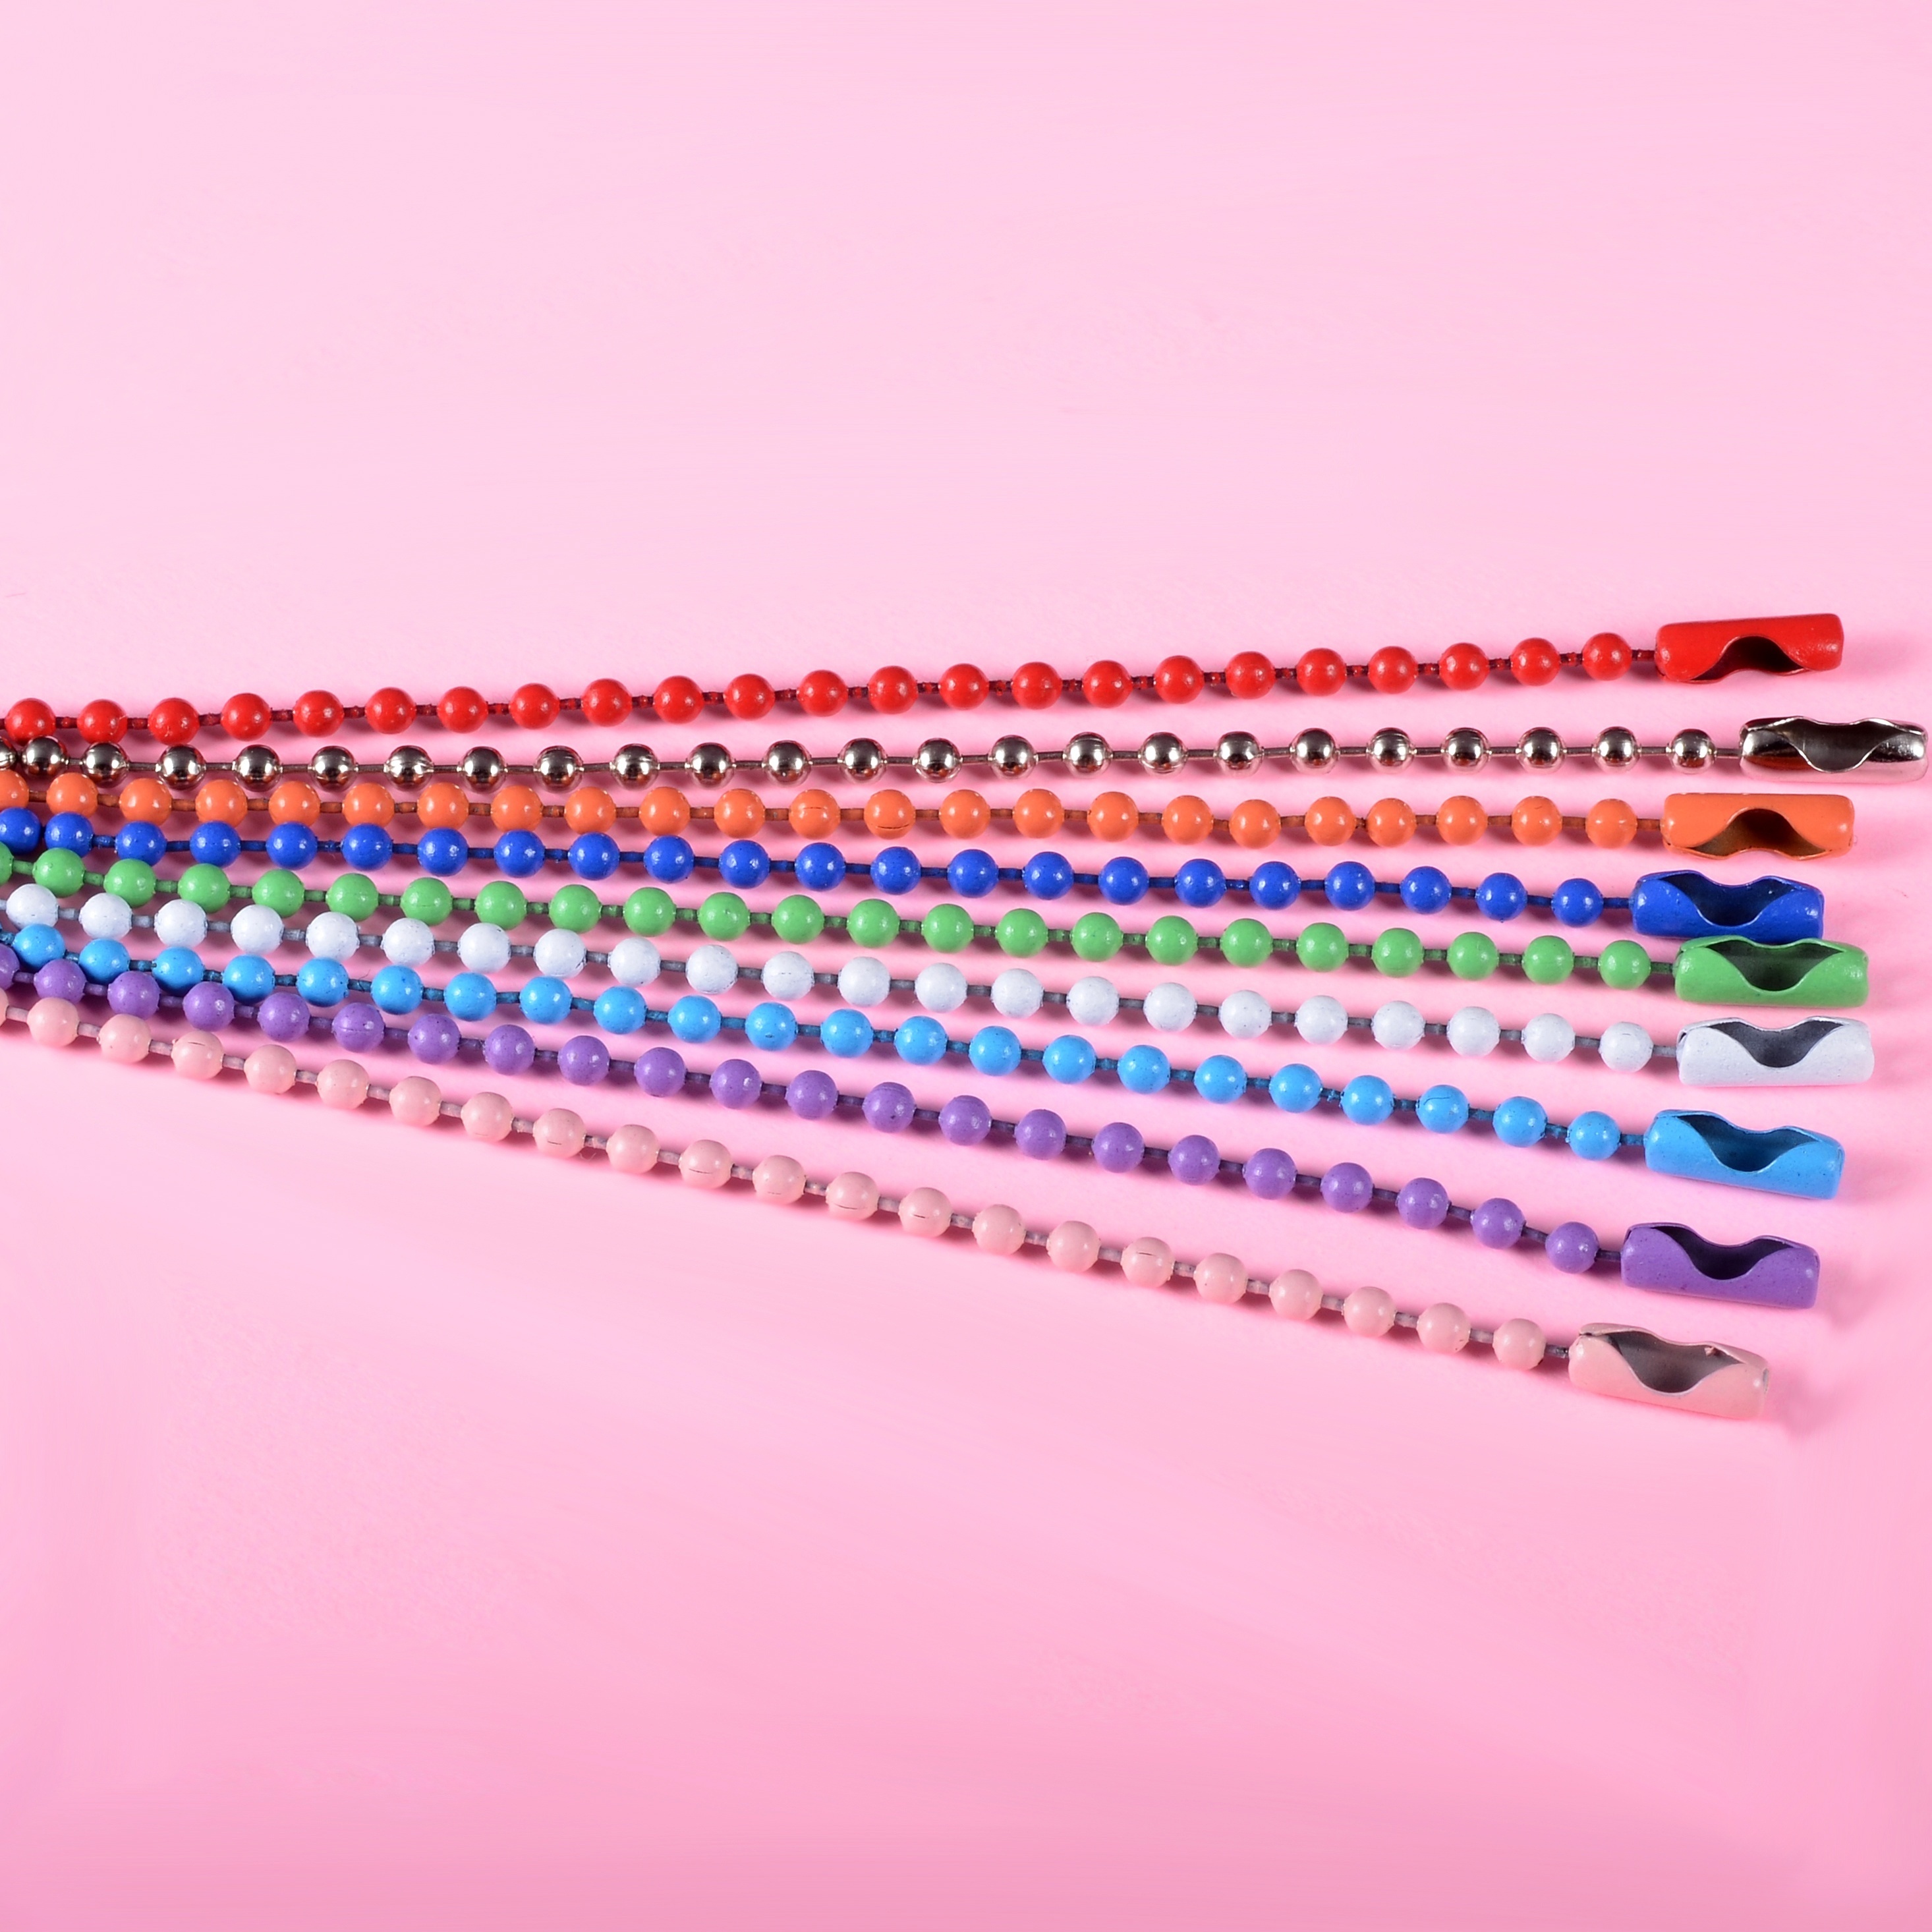 Cadena de bolas para llavero con cierre galvanizado en distintos colores